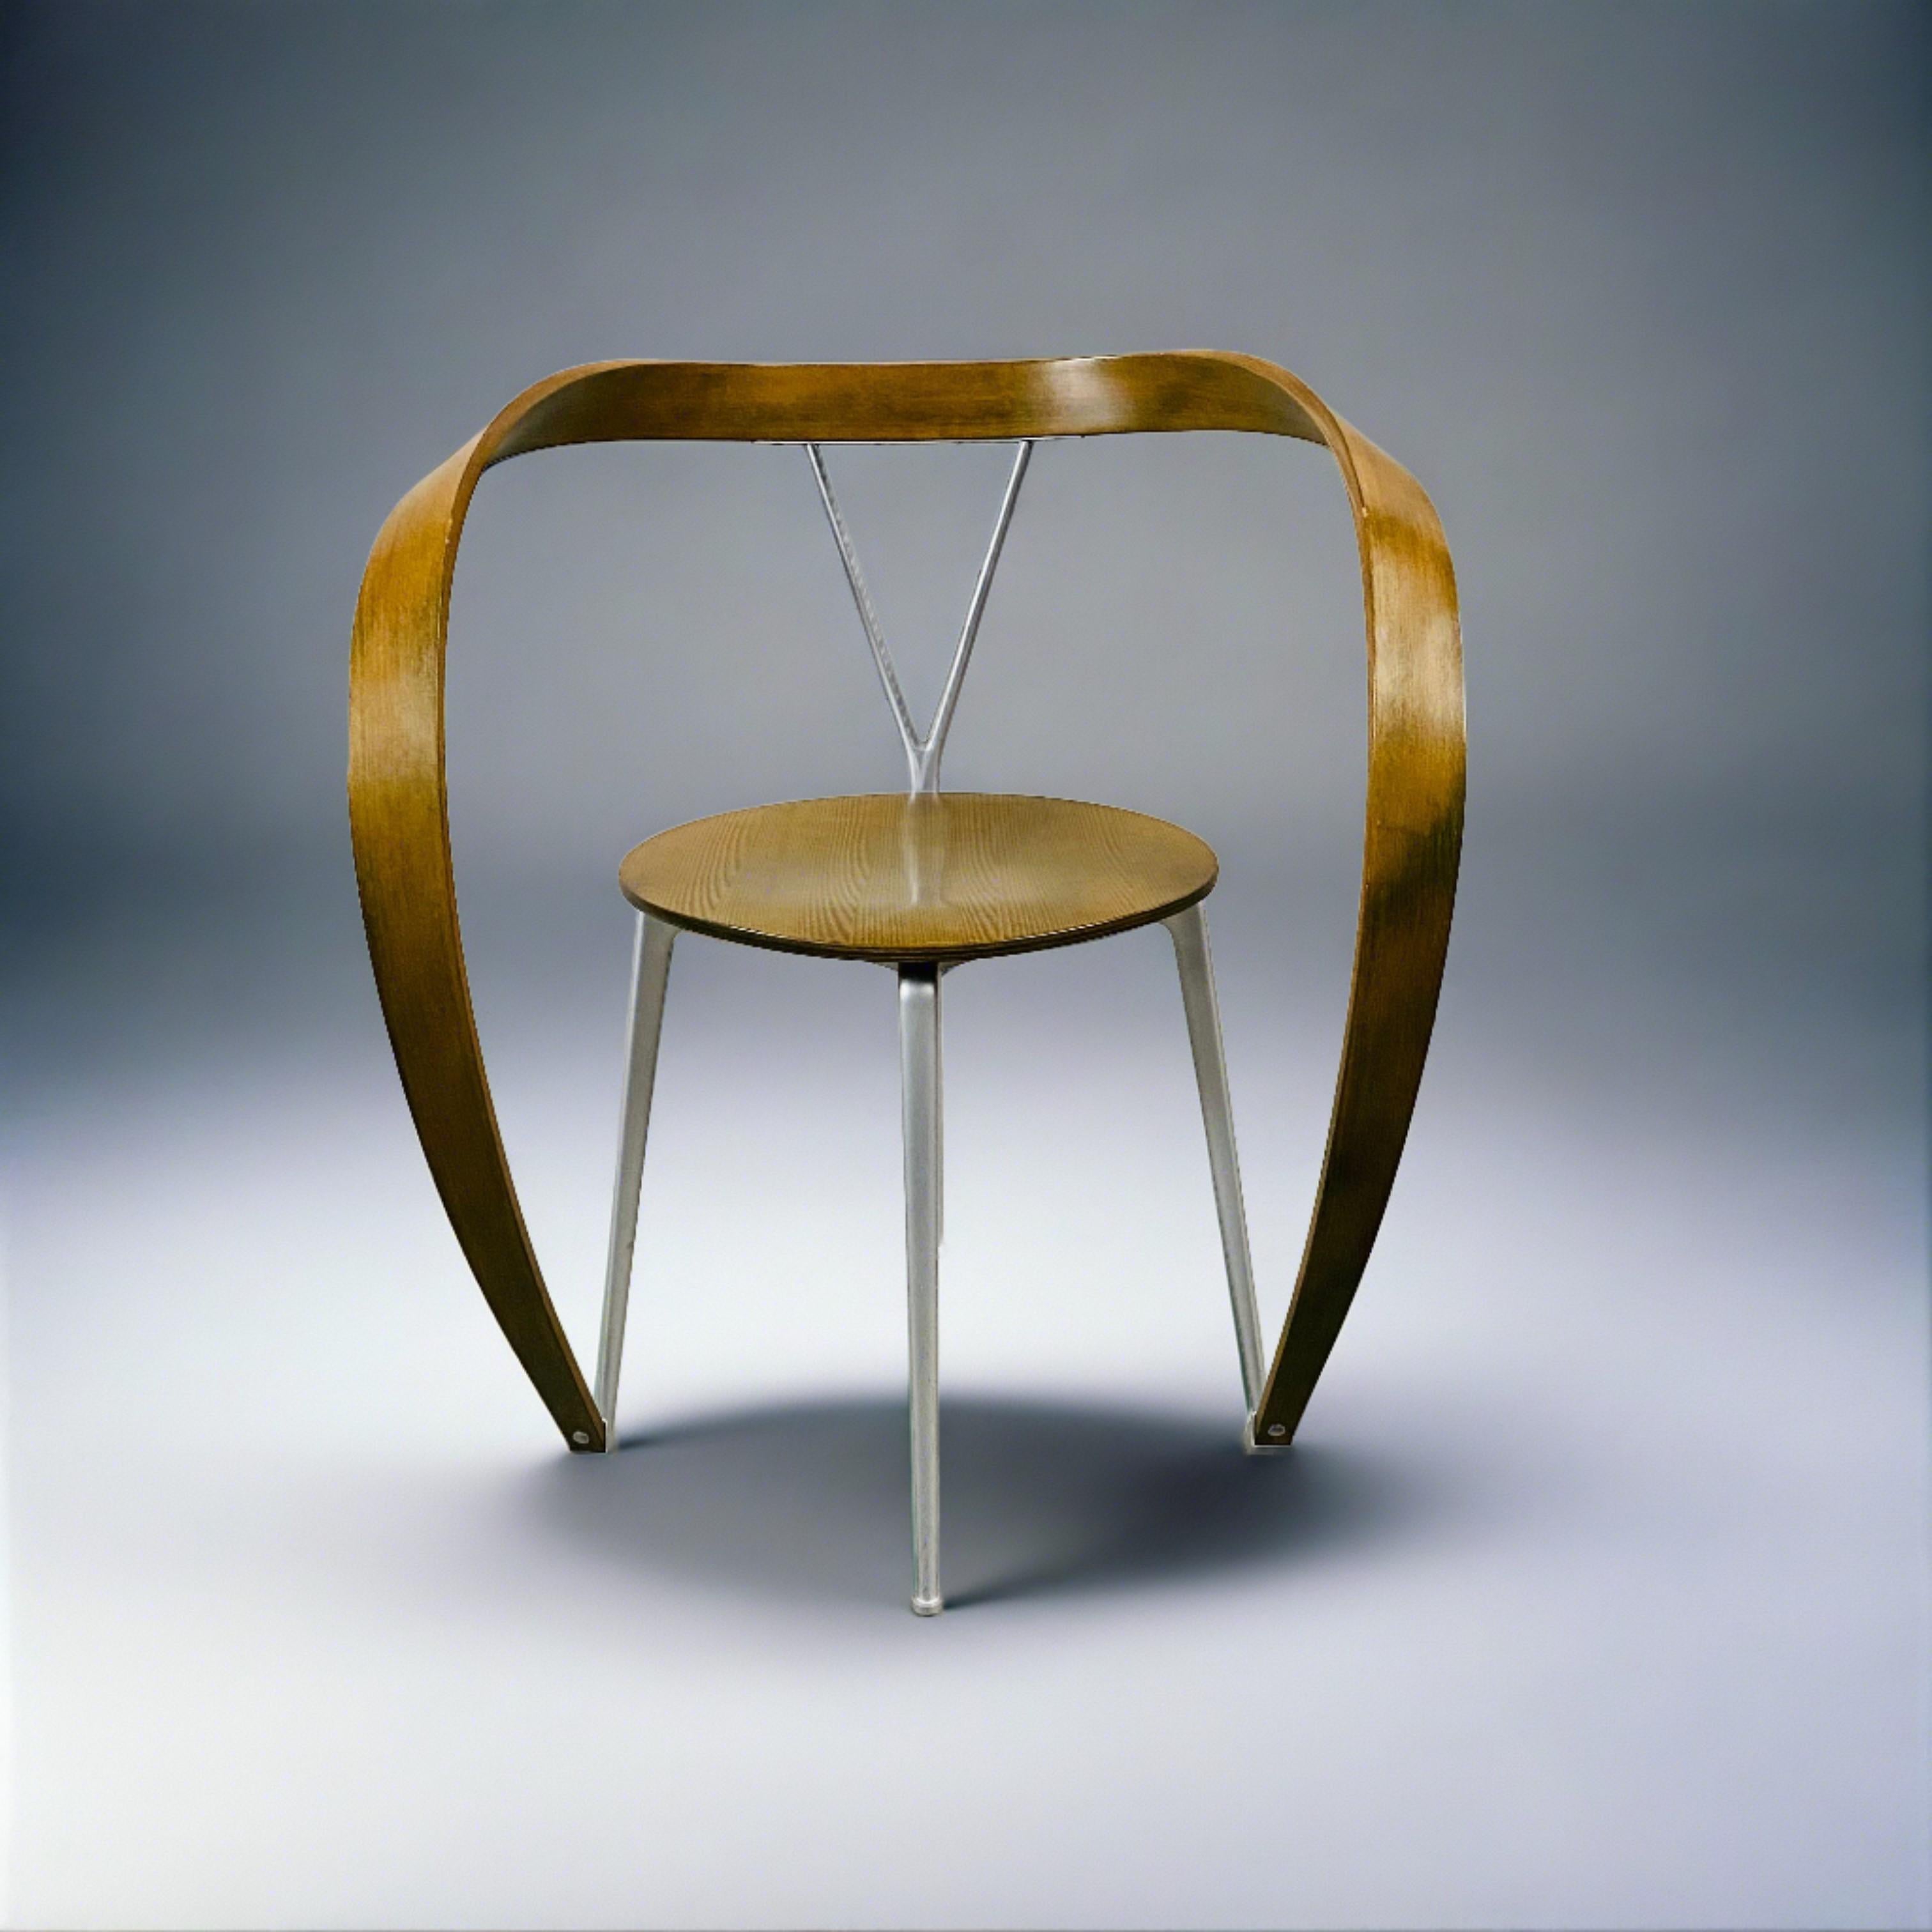 Modern Revers Chair by Andrea Branzi for Cassina Italian Design 1993 For Sale